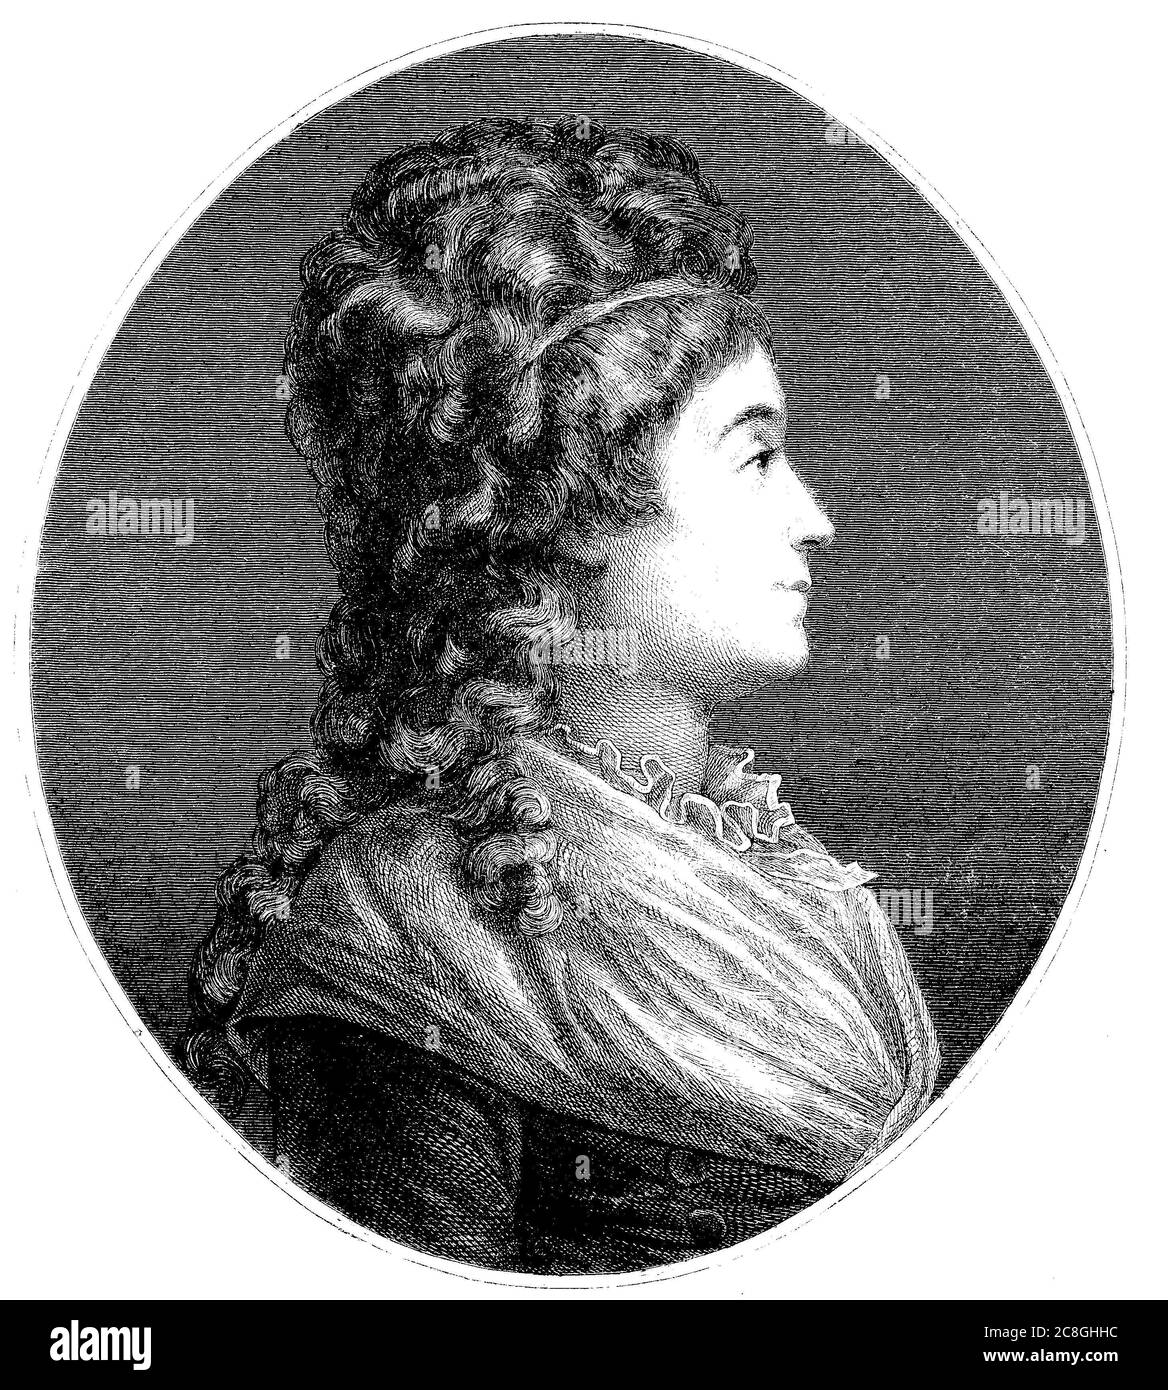 Marie-Jeanne Manon Roland de la Platiere, 1754-1793, née Marie-Jeanne Phlipon, connue sous le nom de Madame Roland, est une révolutionnaire française Banque D'Images